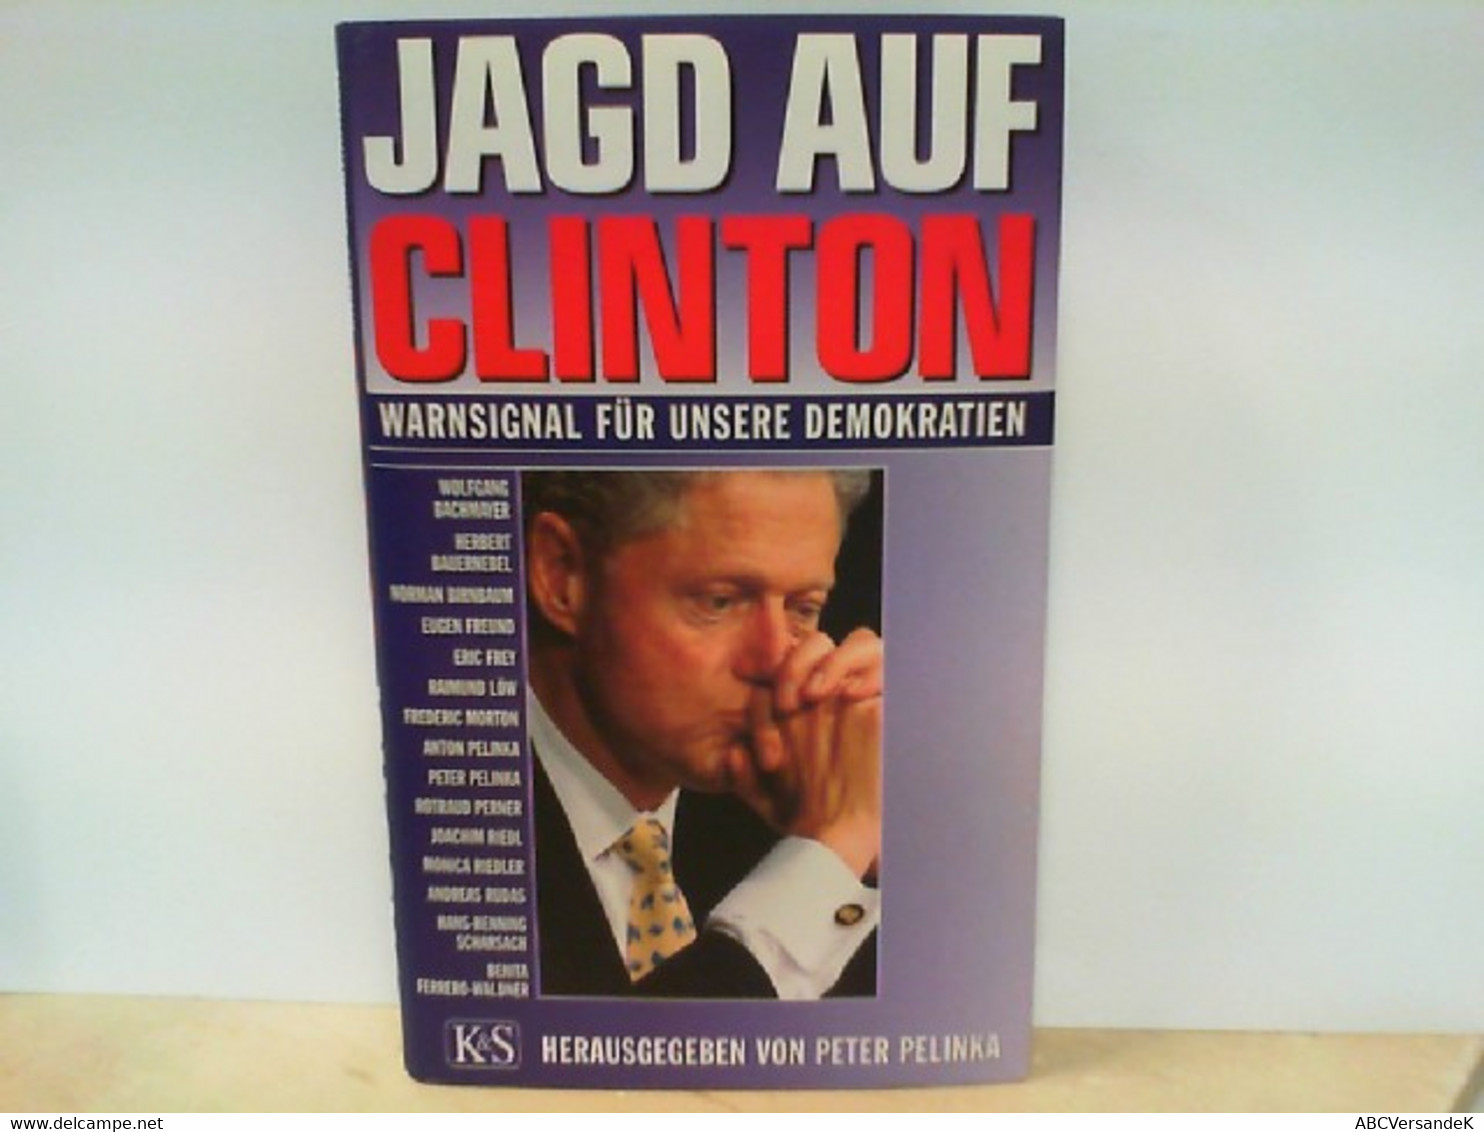 Jagd Auf Clinton - Warnsignal Für Unsere Demokratien - Autographed